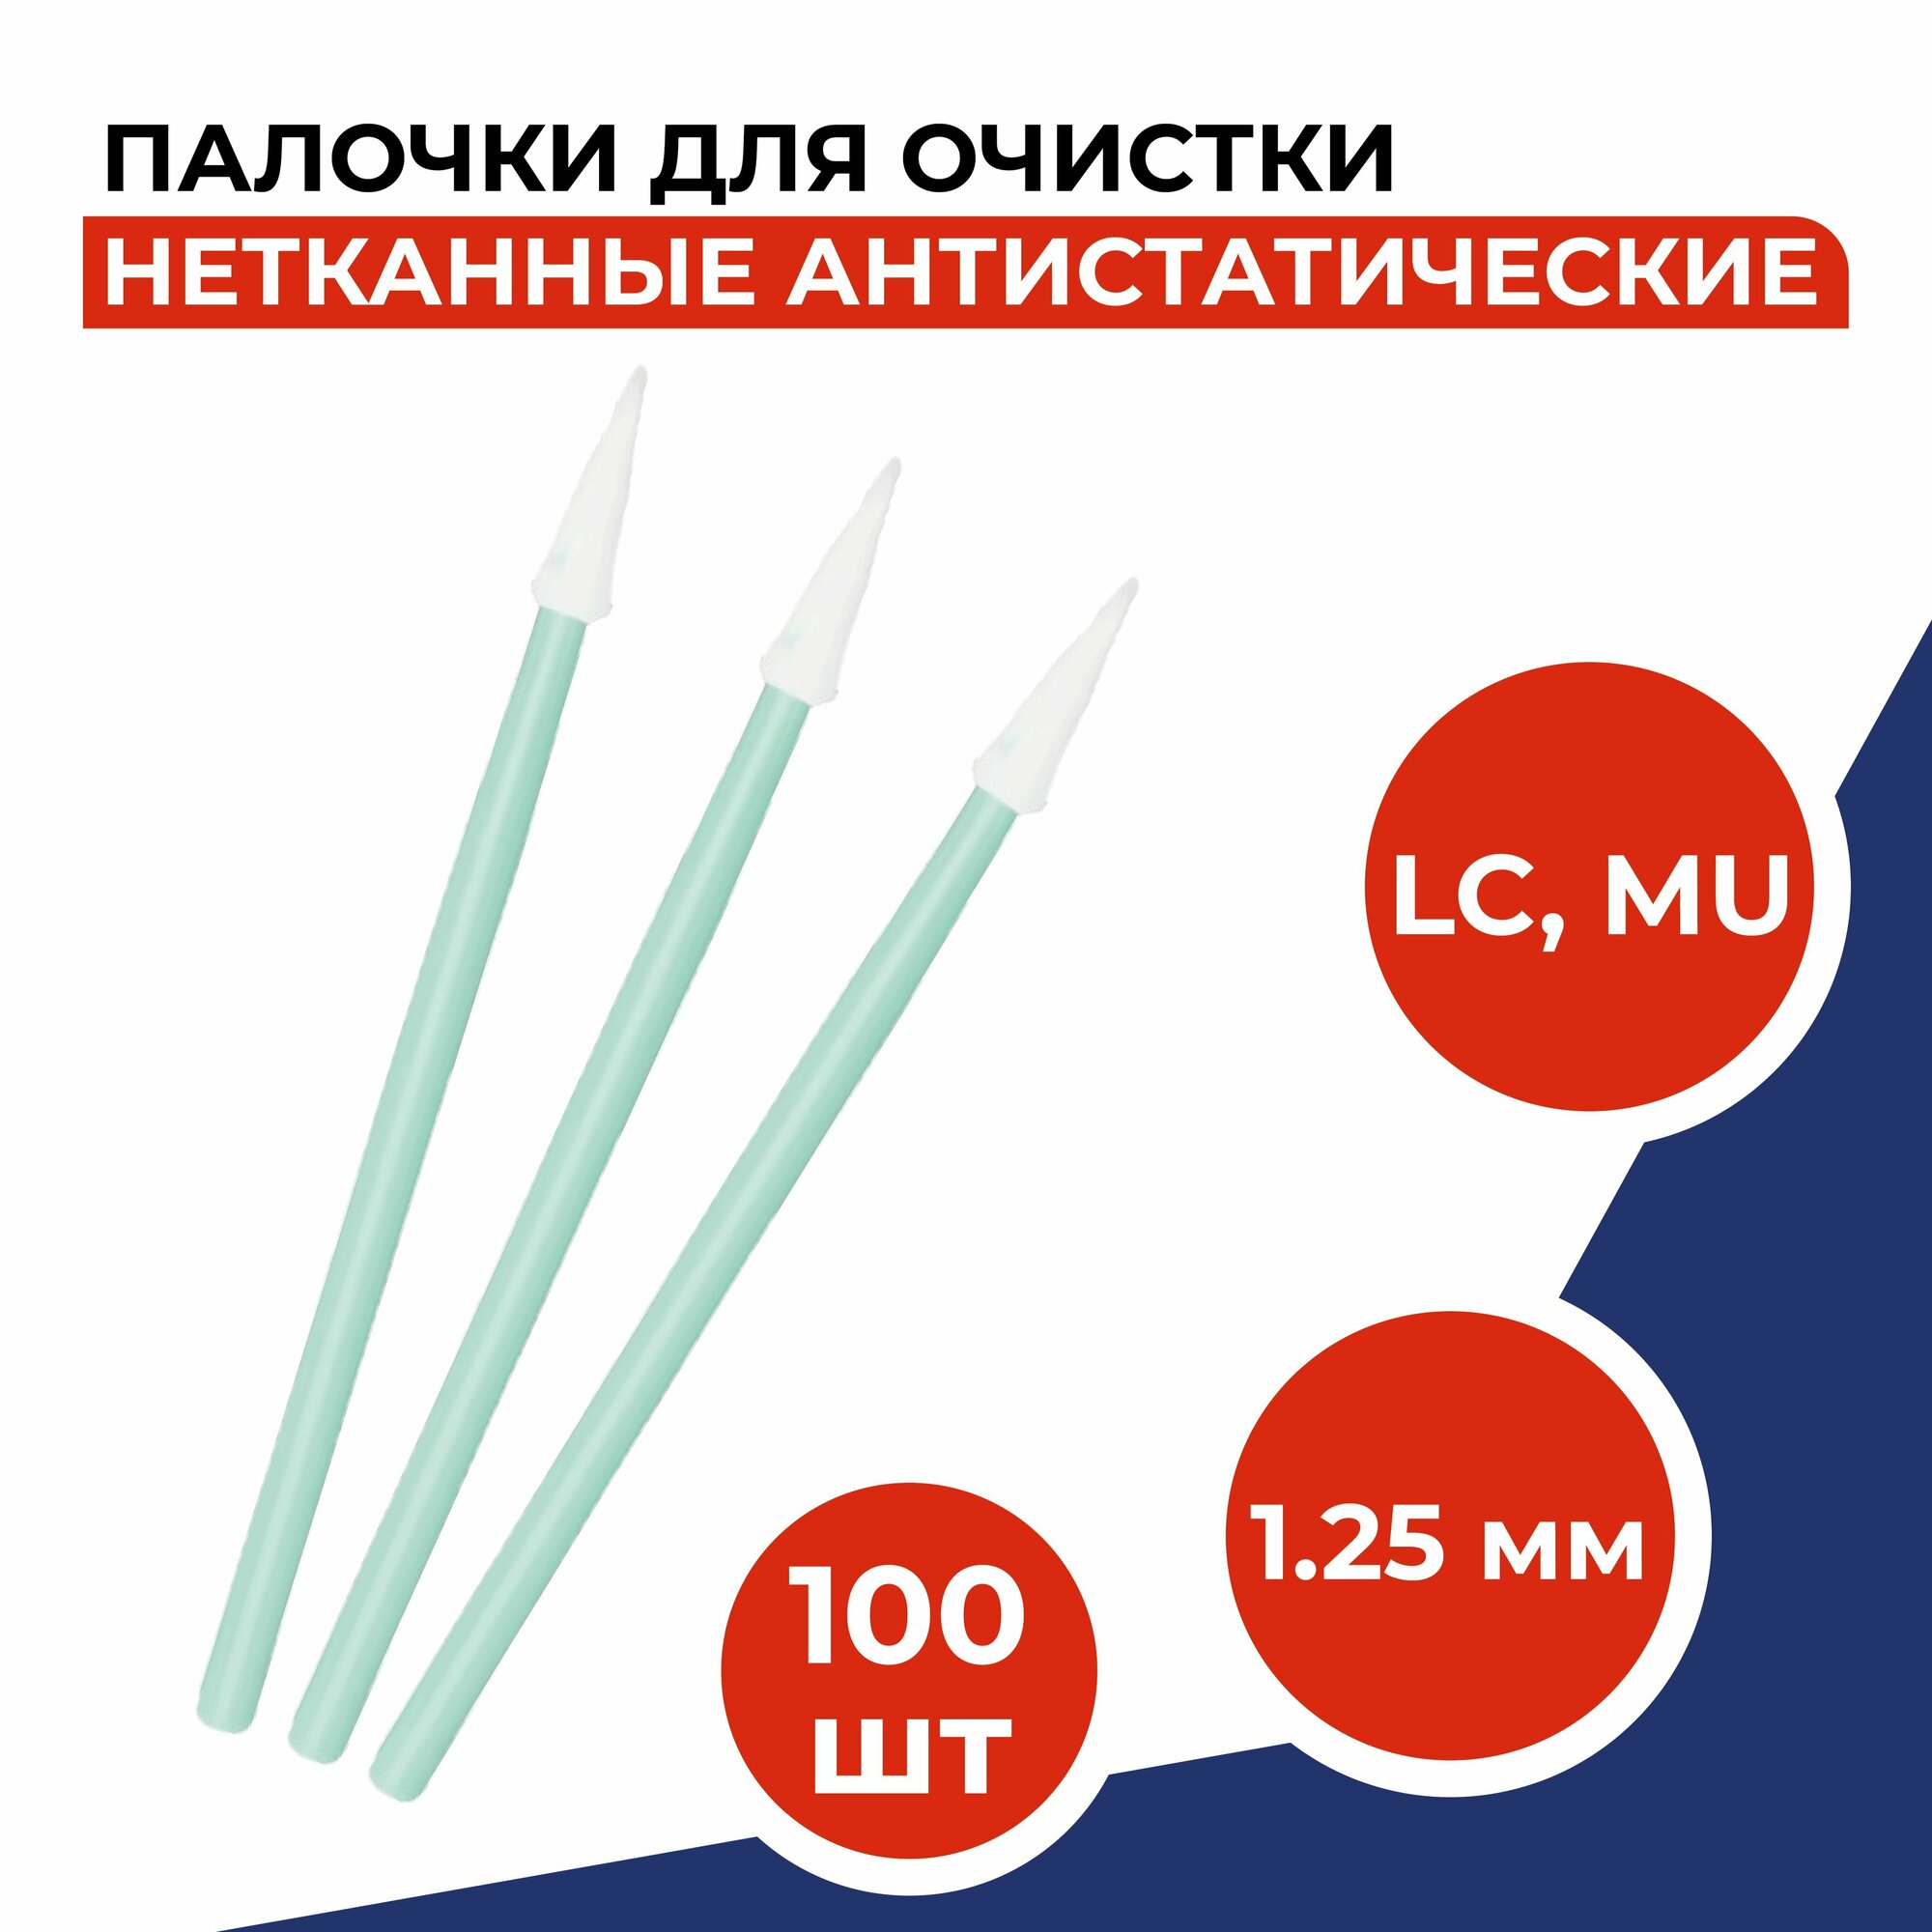 Палочки для очистки коннекторов и протирки голов принтеров (LC, MU) и адаптеров (1.25мм), 100шт/уп